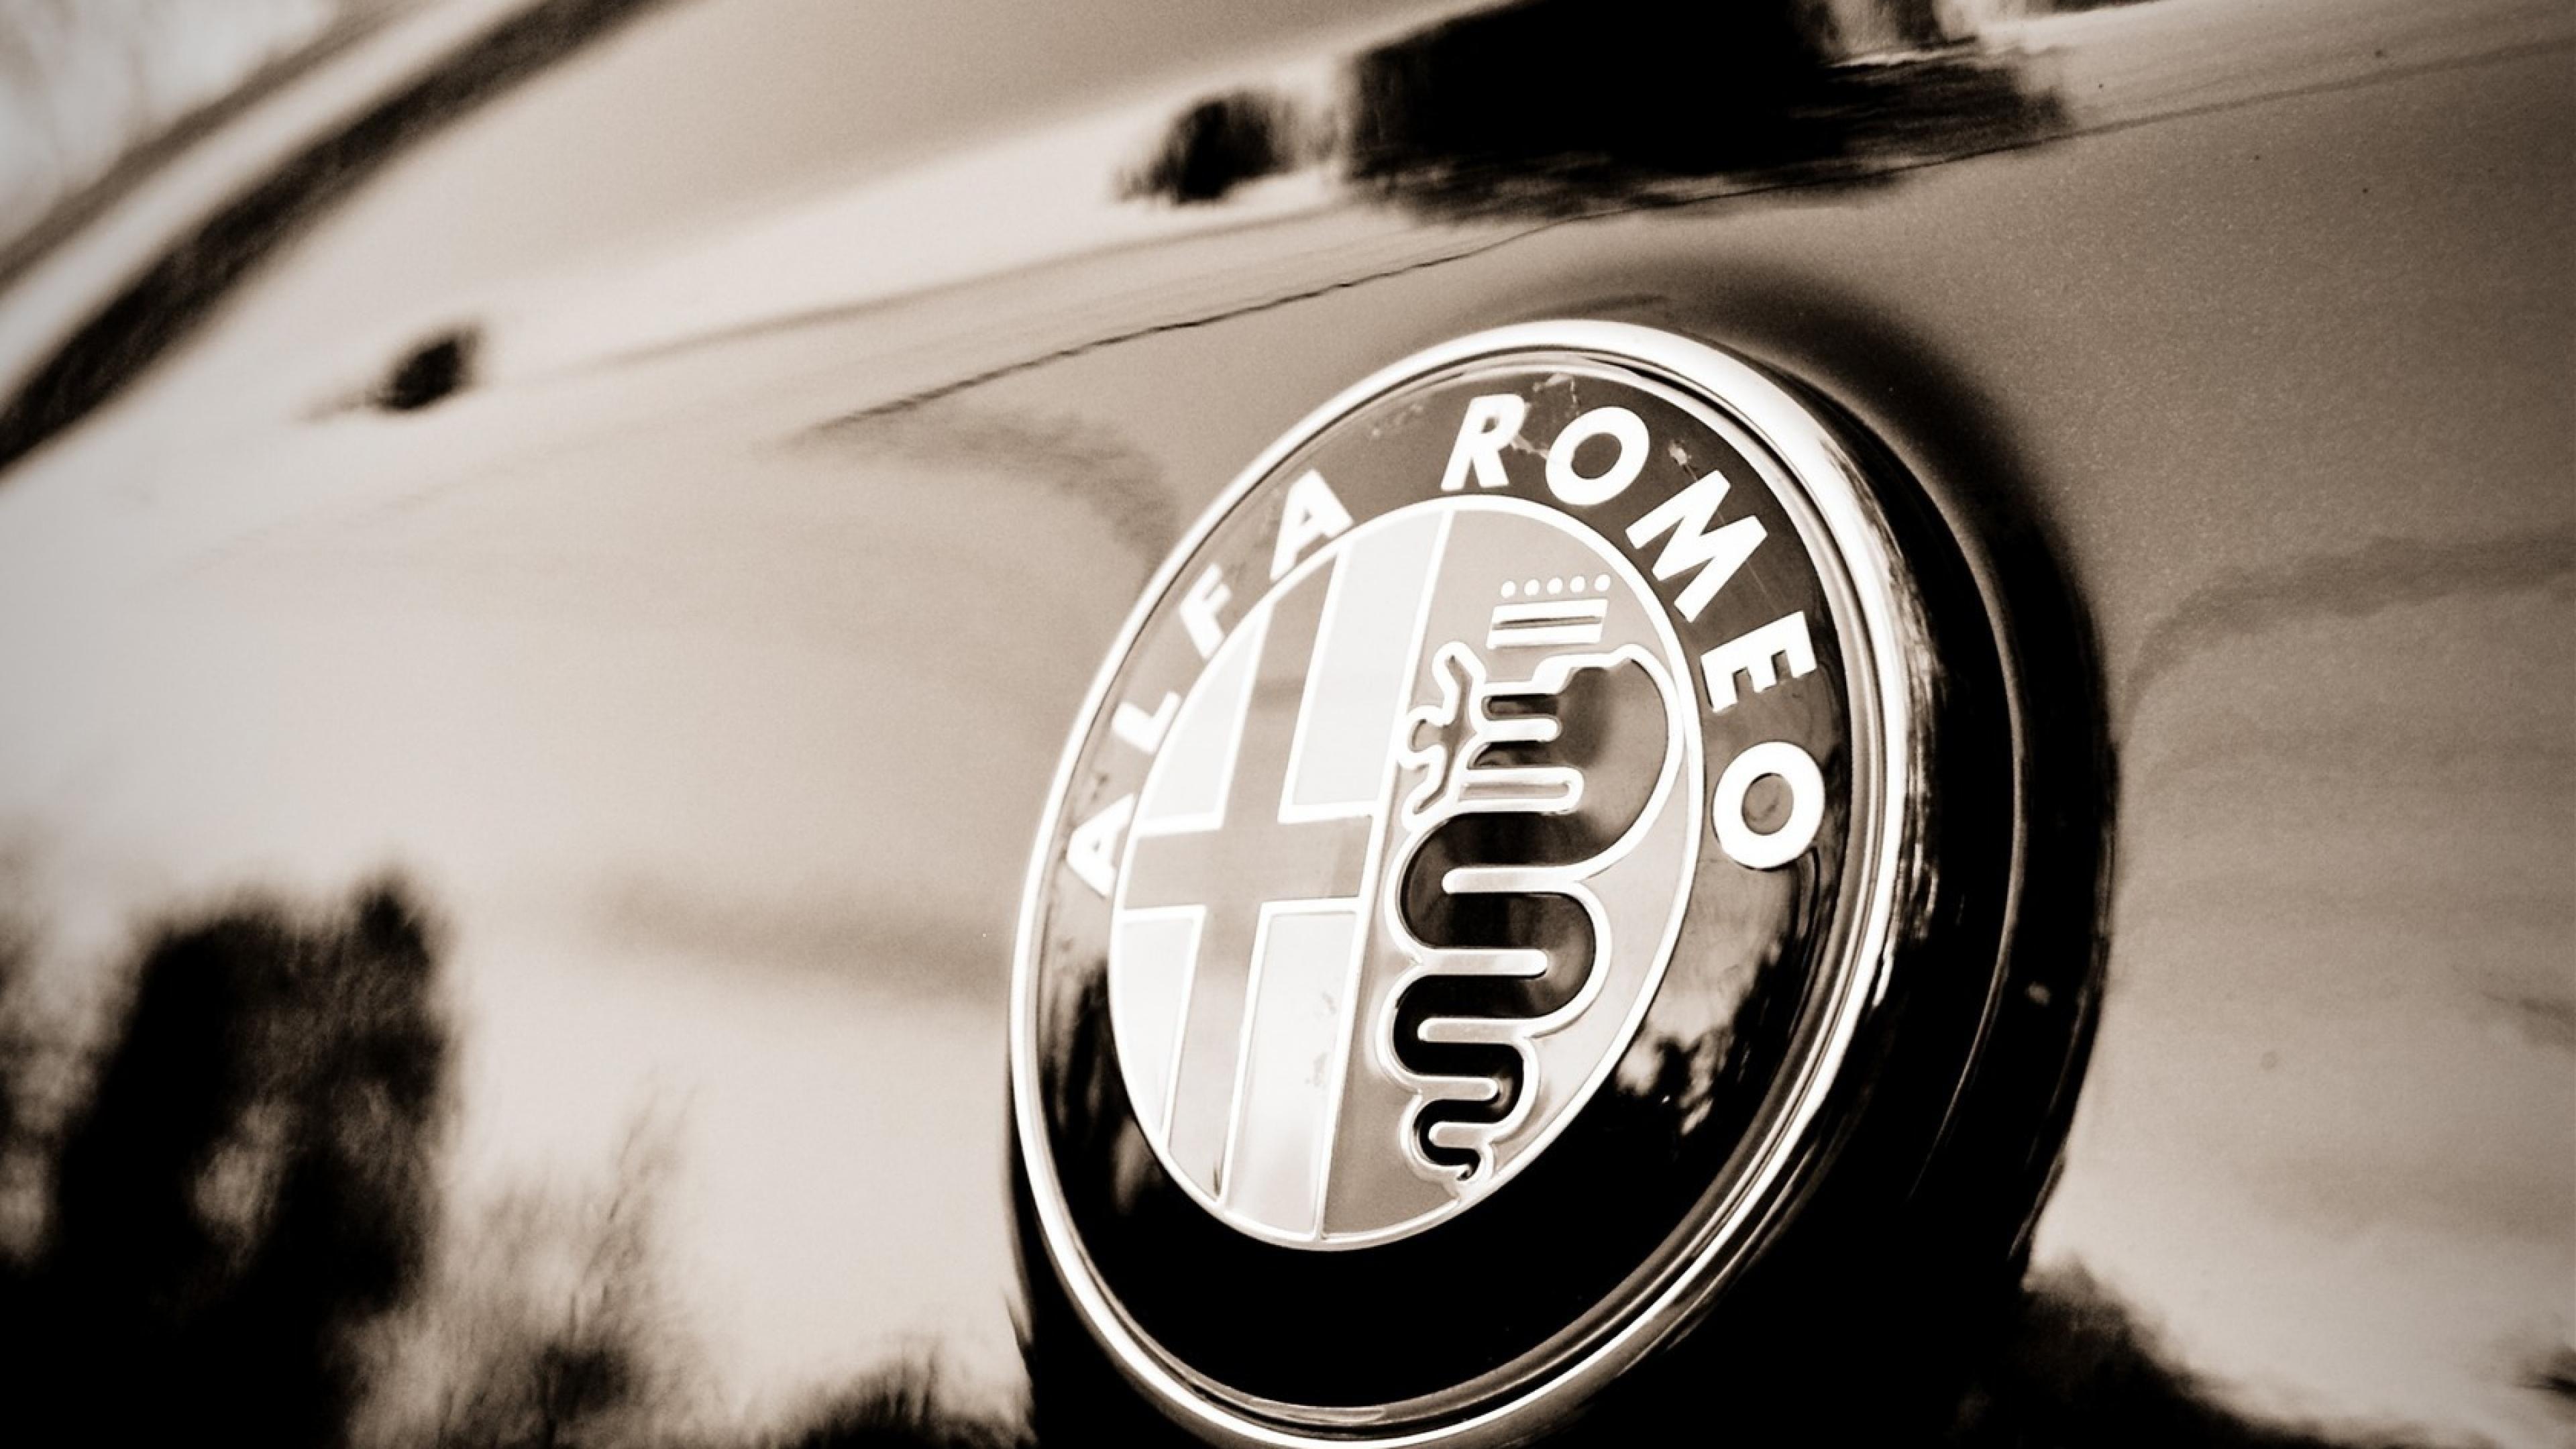 Alfa Romeo Wallpaper Photo Image in HD. Wallpaper, Alfa romeo